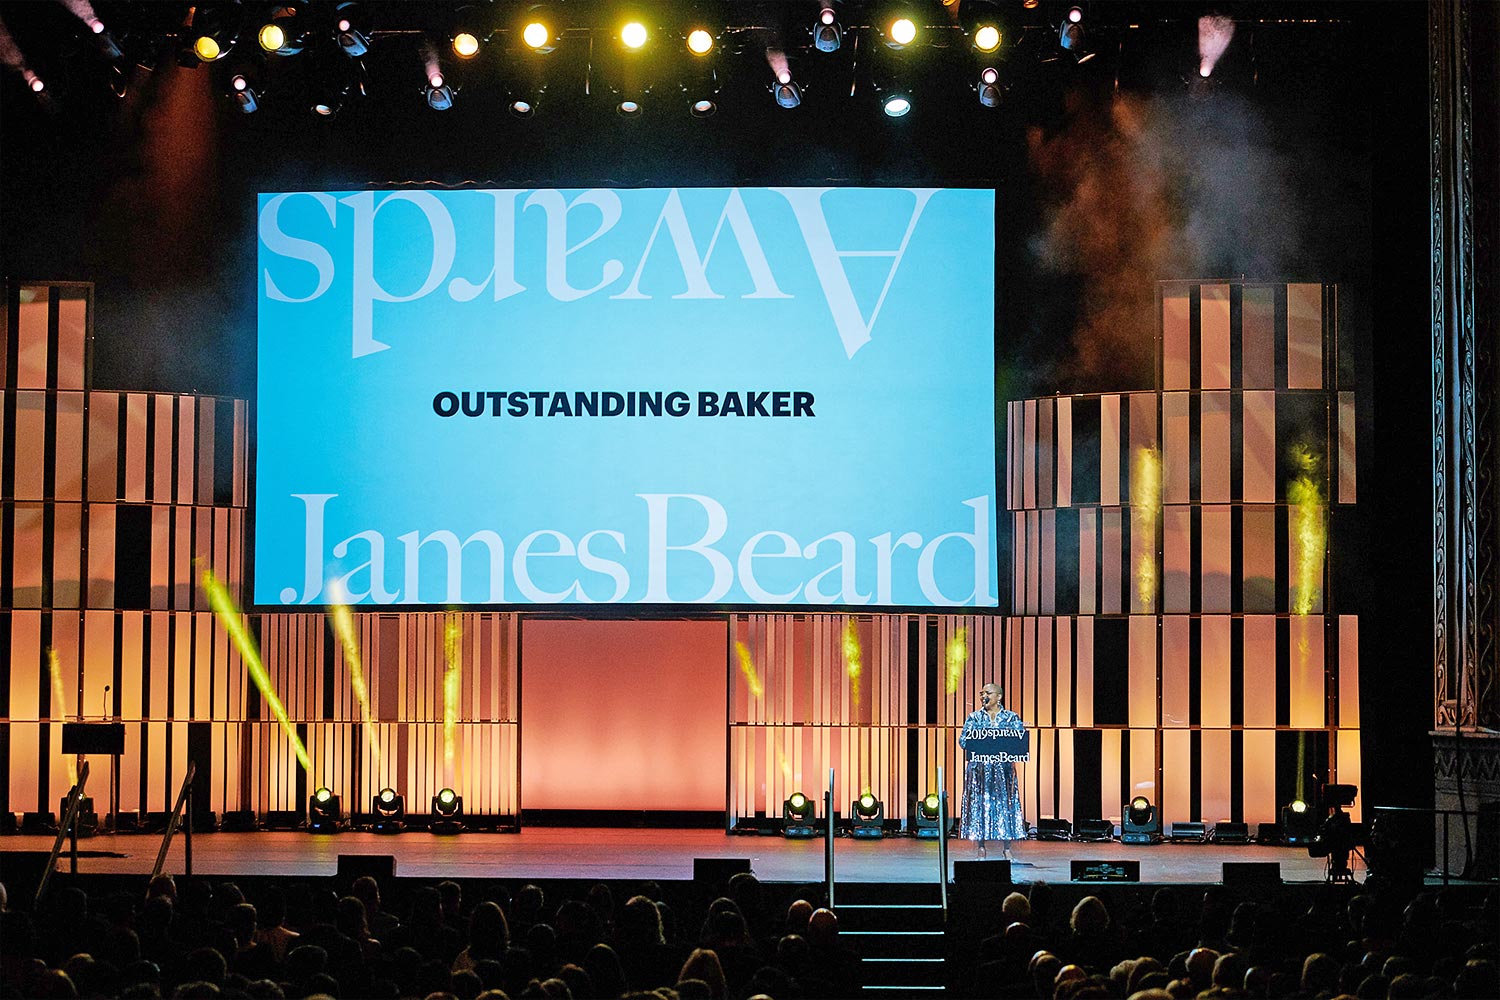 The James Beard Awards